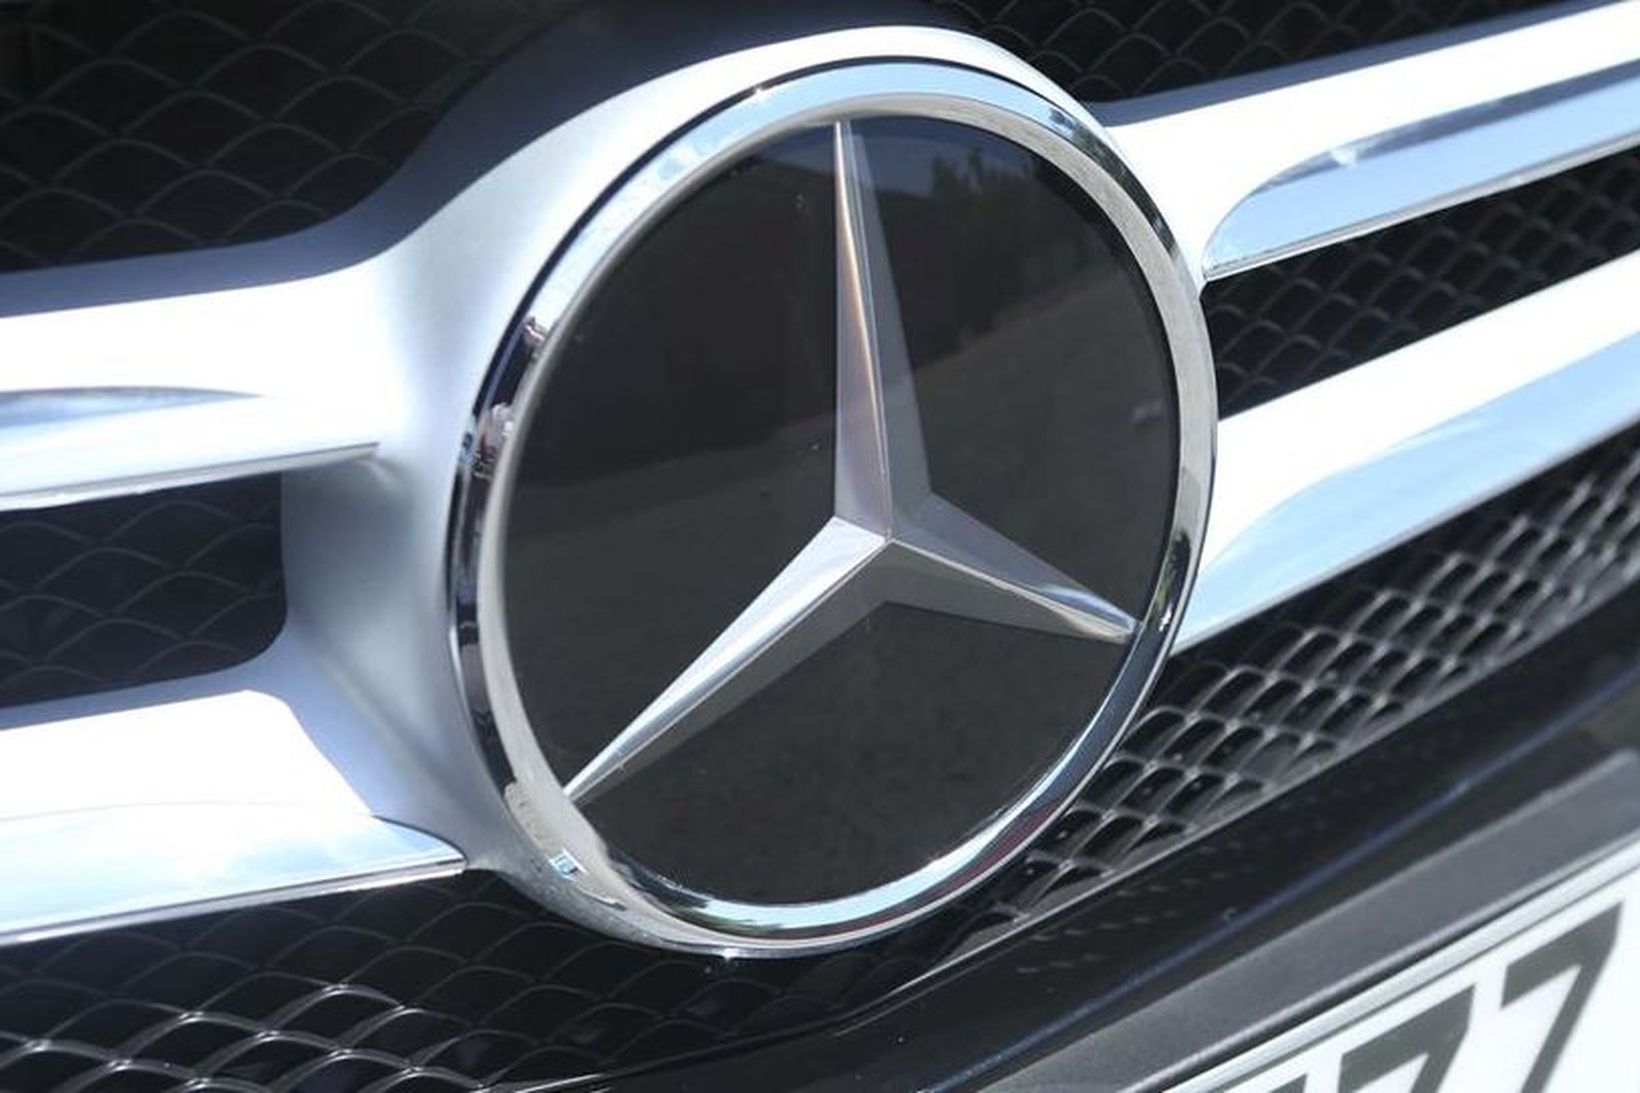 Mercedes Benz á yfir sér fjársektir fyrir sviksemi.